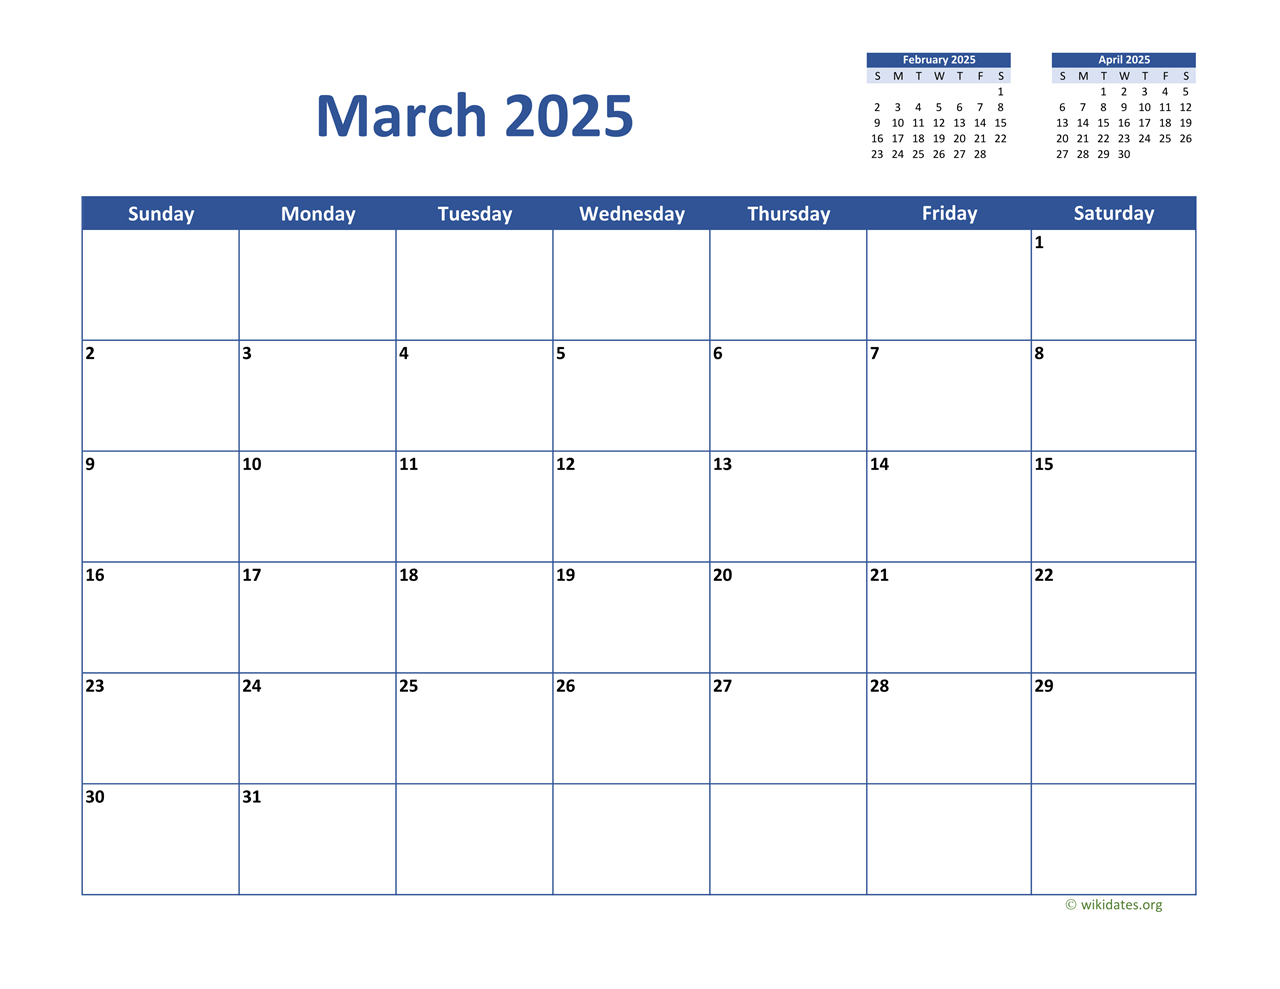 March 2025 Calendar Classic WikiDates org